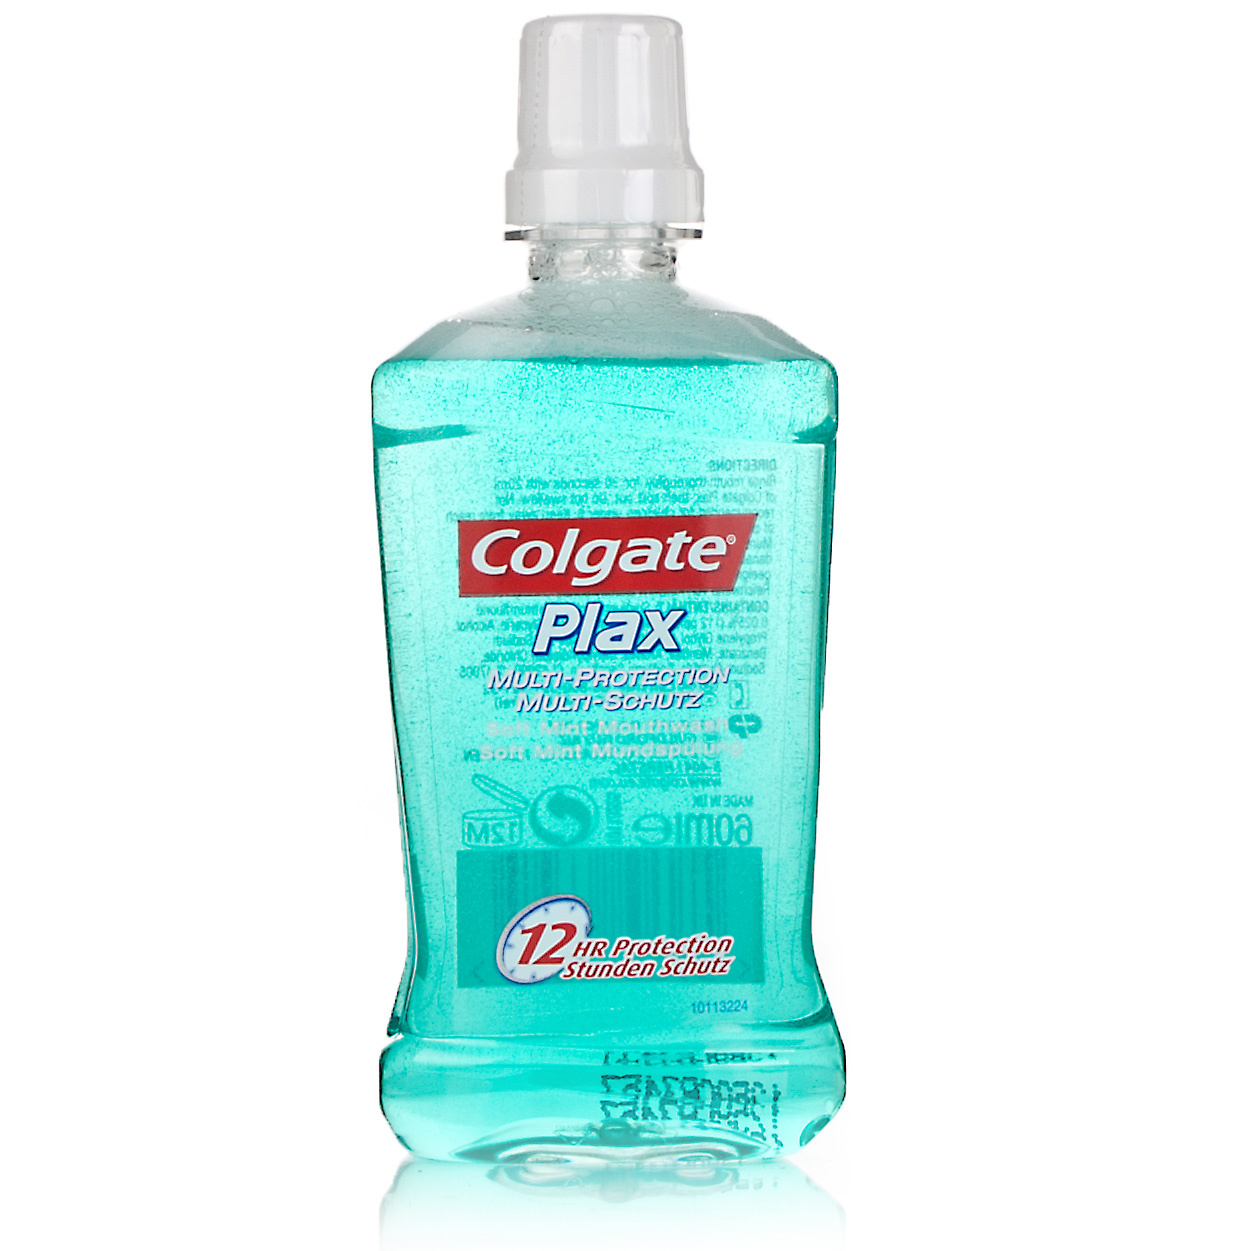 colgate-plax-soft-mint-mouthwash-60ml-mouthwash-chemist-direct